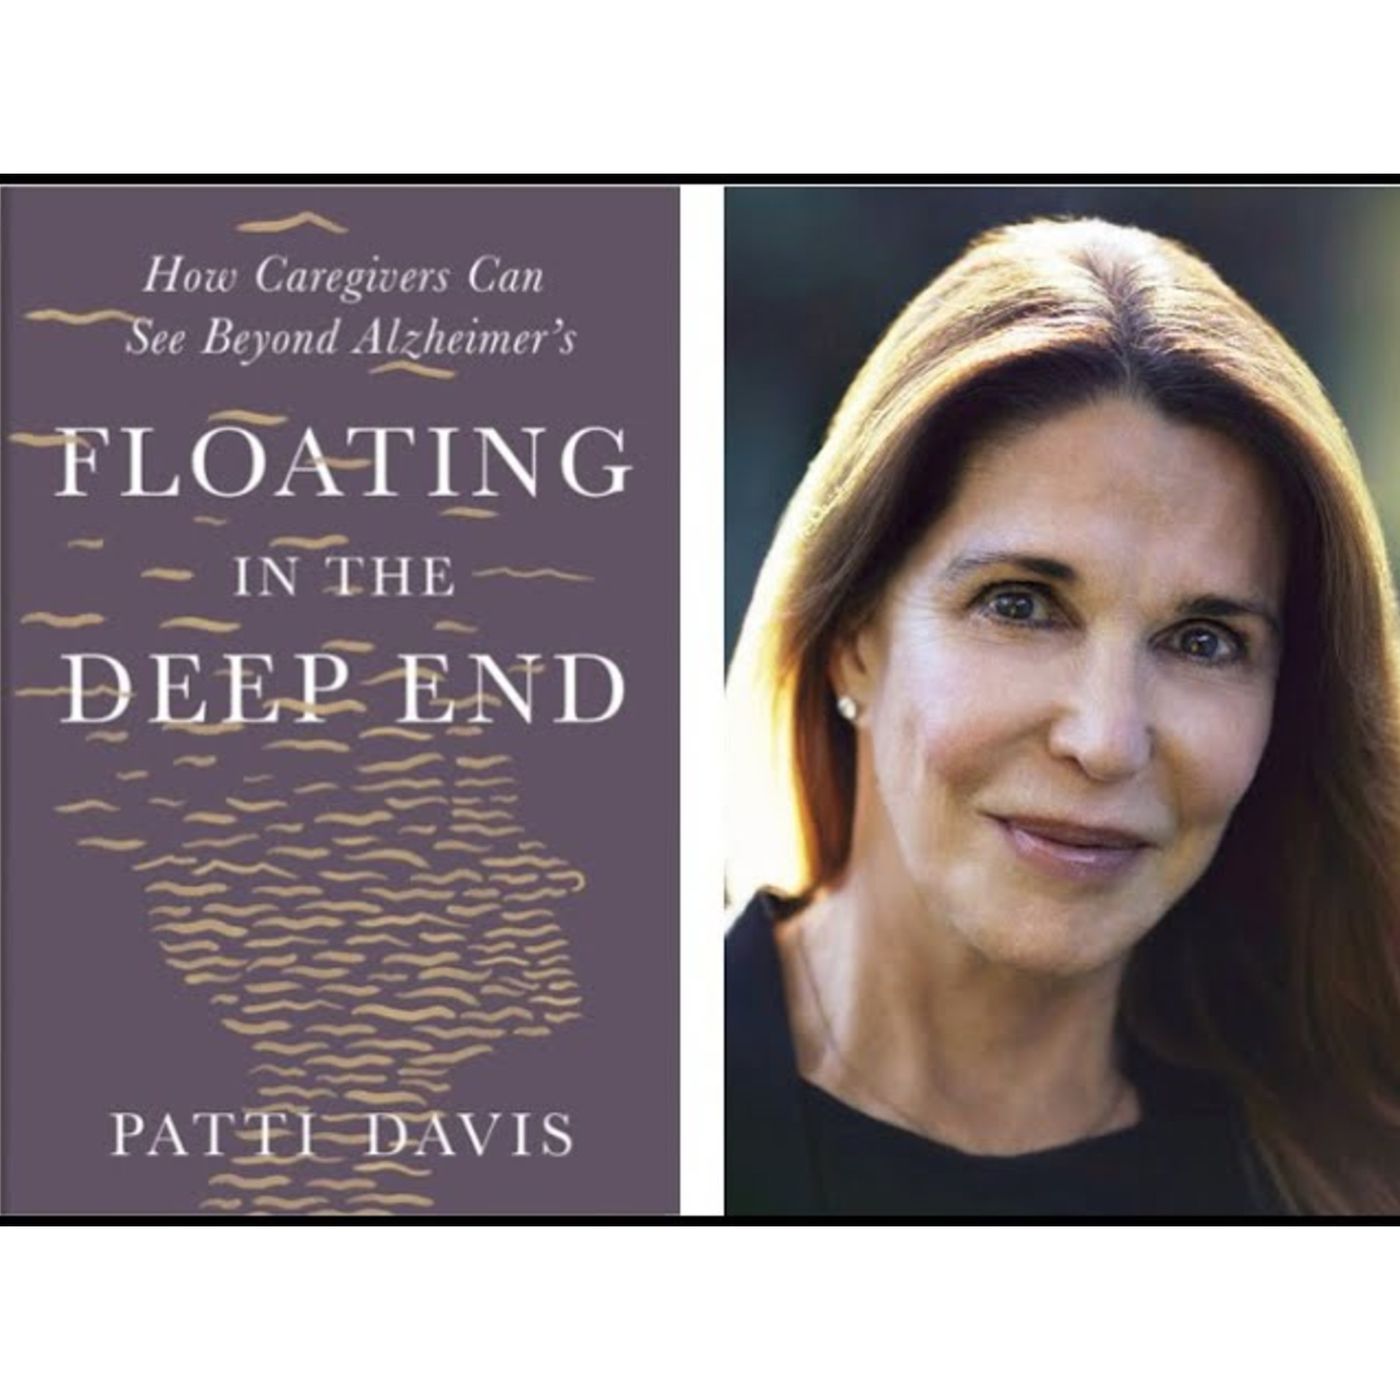 Patti Davis, Ronald Reagan’s Daughter, Offers Caregiver Advice